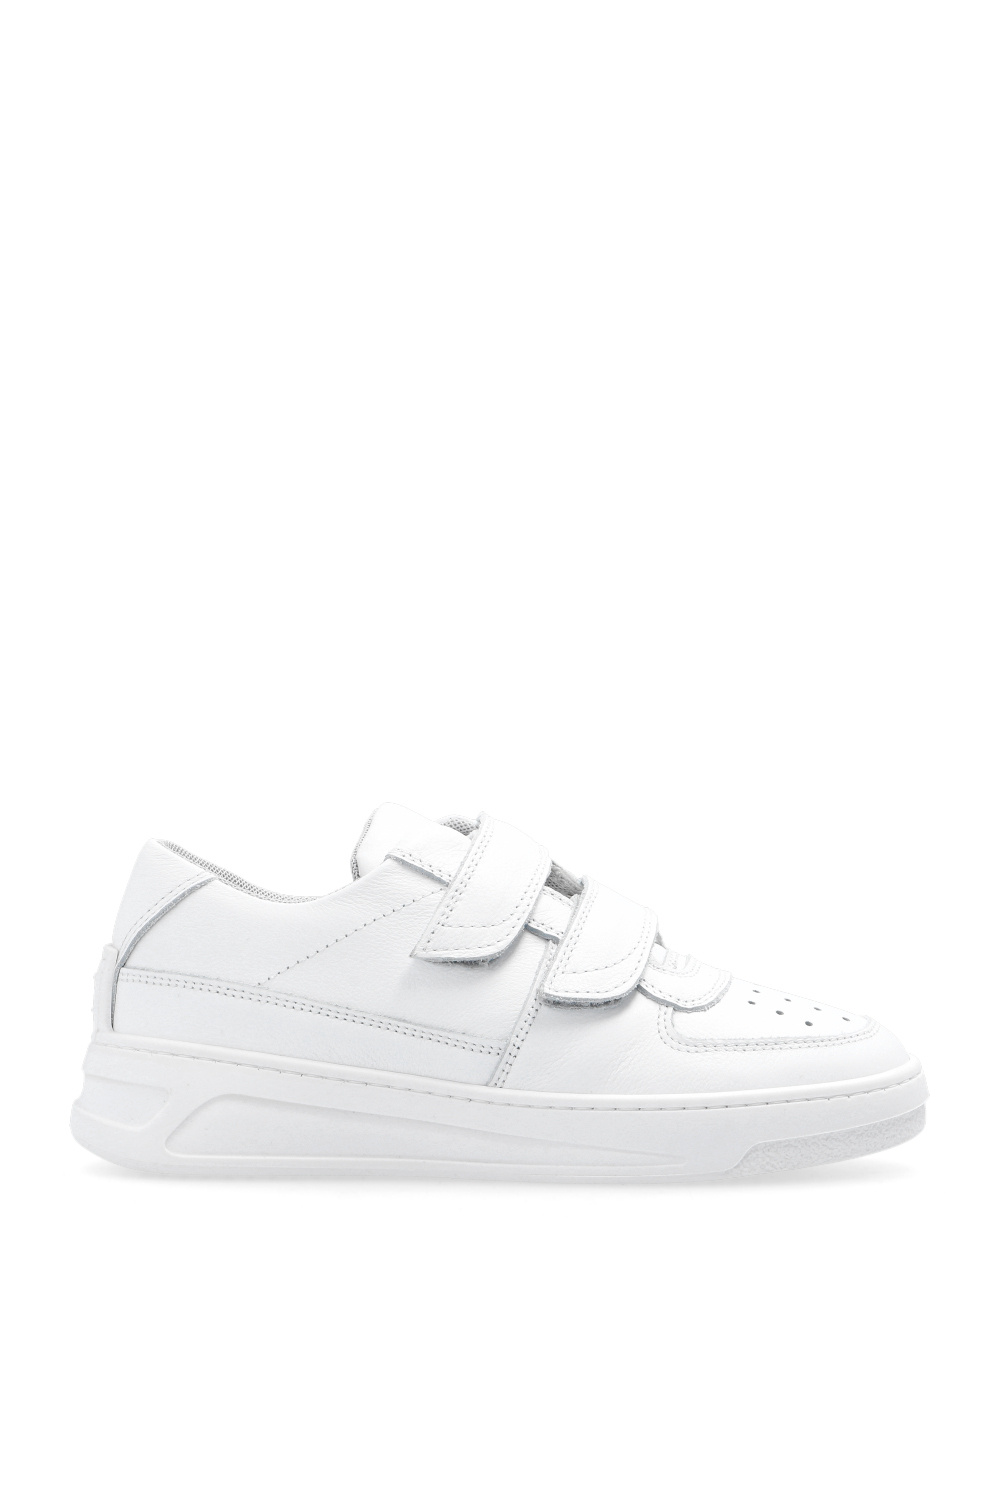 Acne Studios Kids White Velcro Strap Sneakers